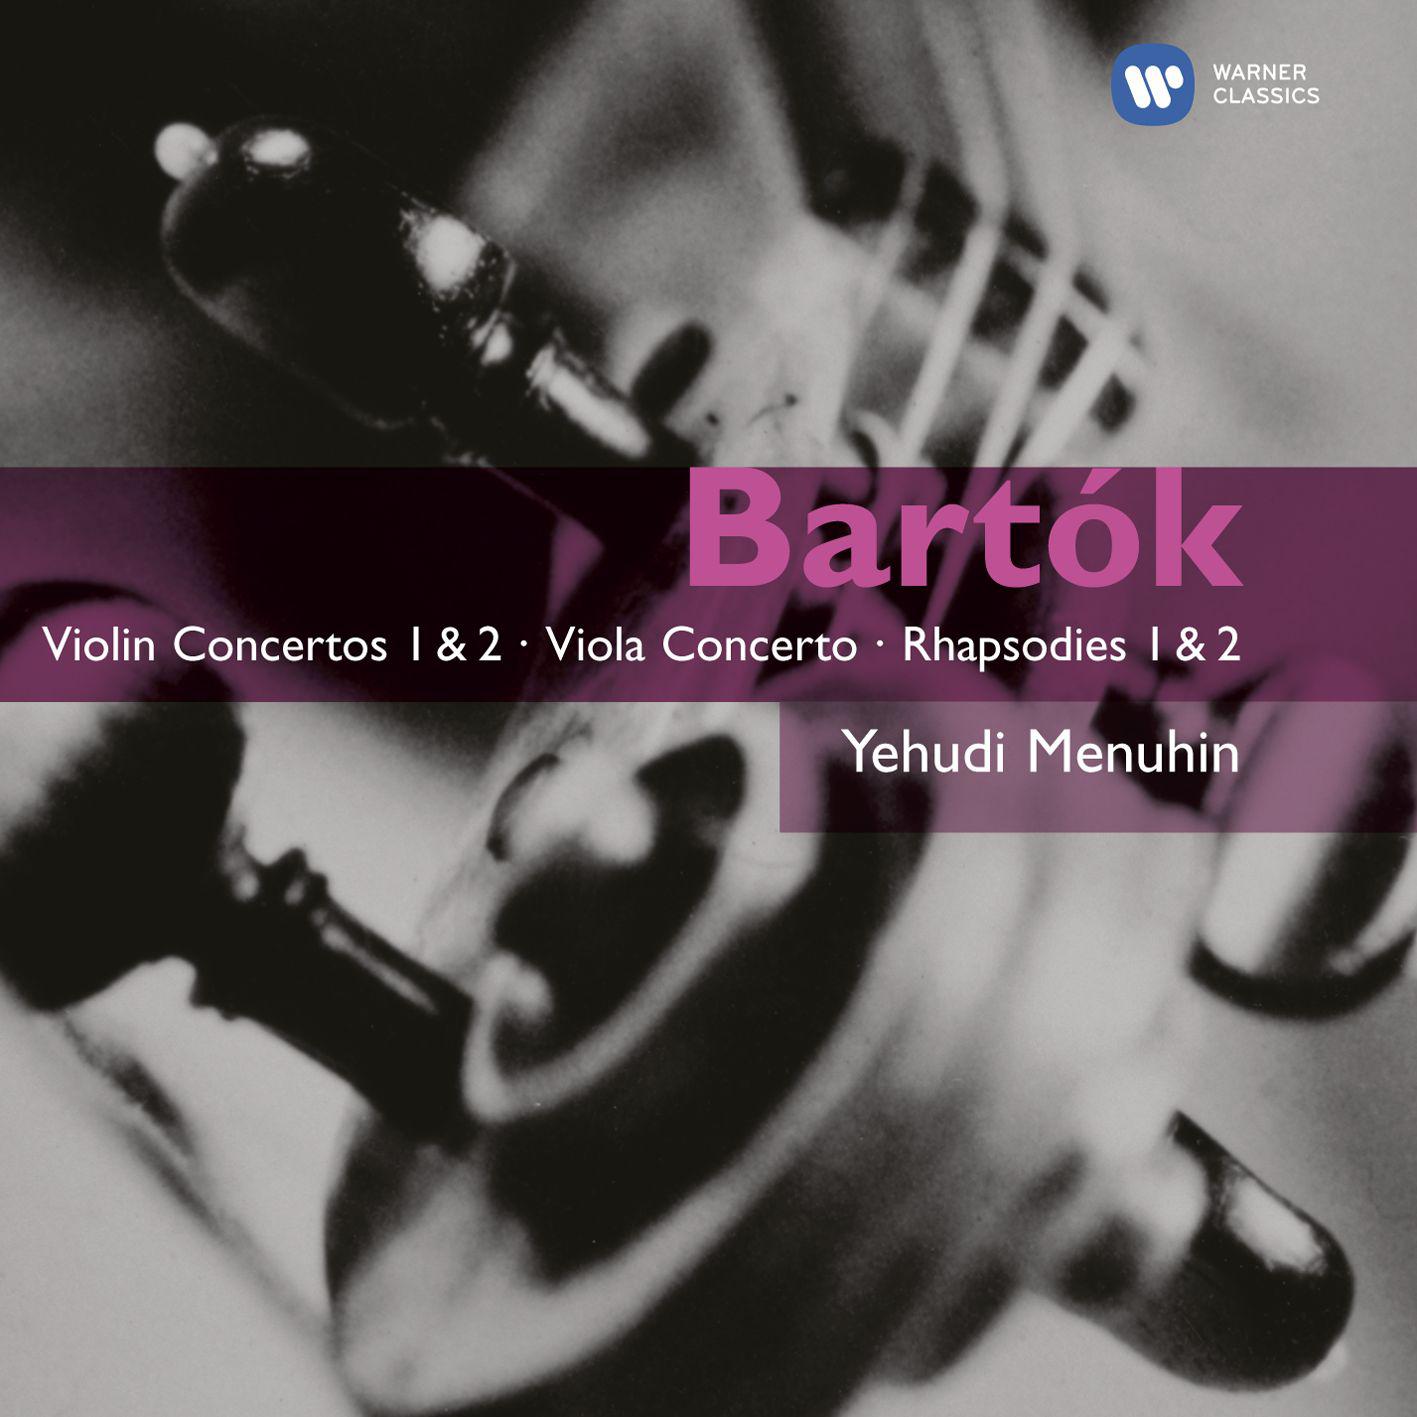 Barto k: Violin Concertos 1  2  Viola Concerto  Rhapsodies 1  2